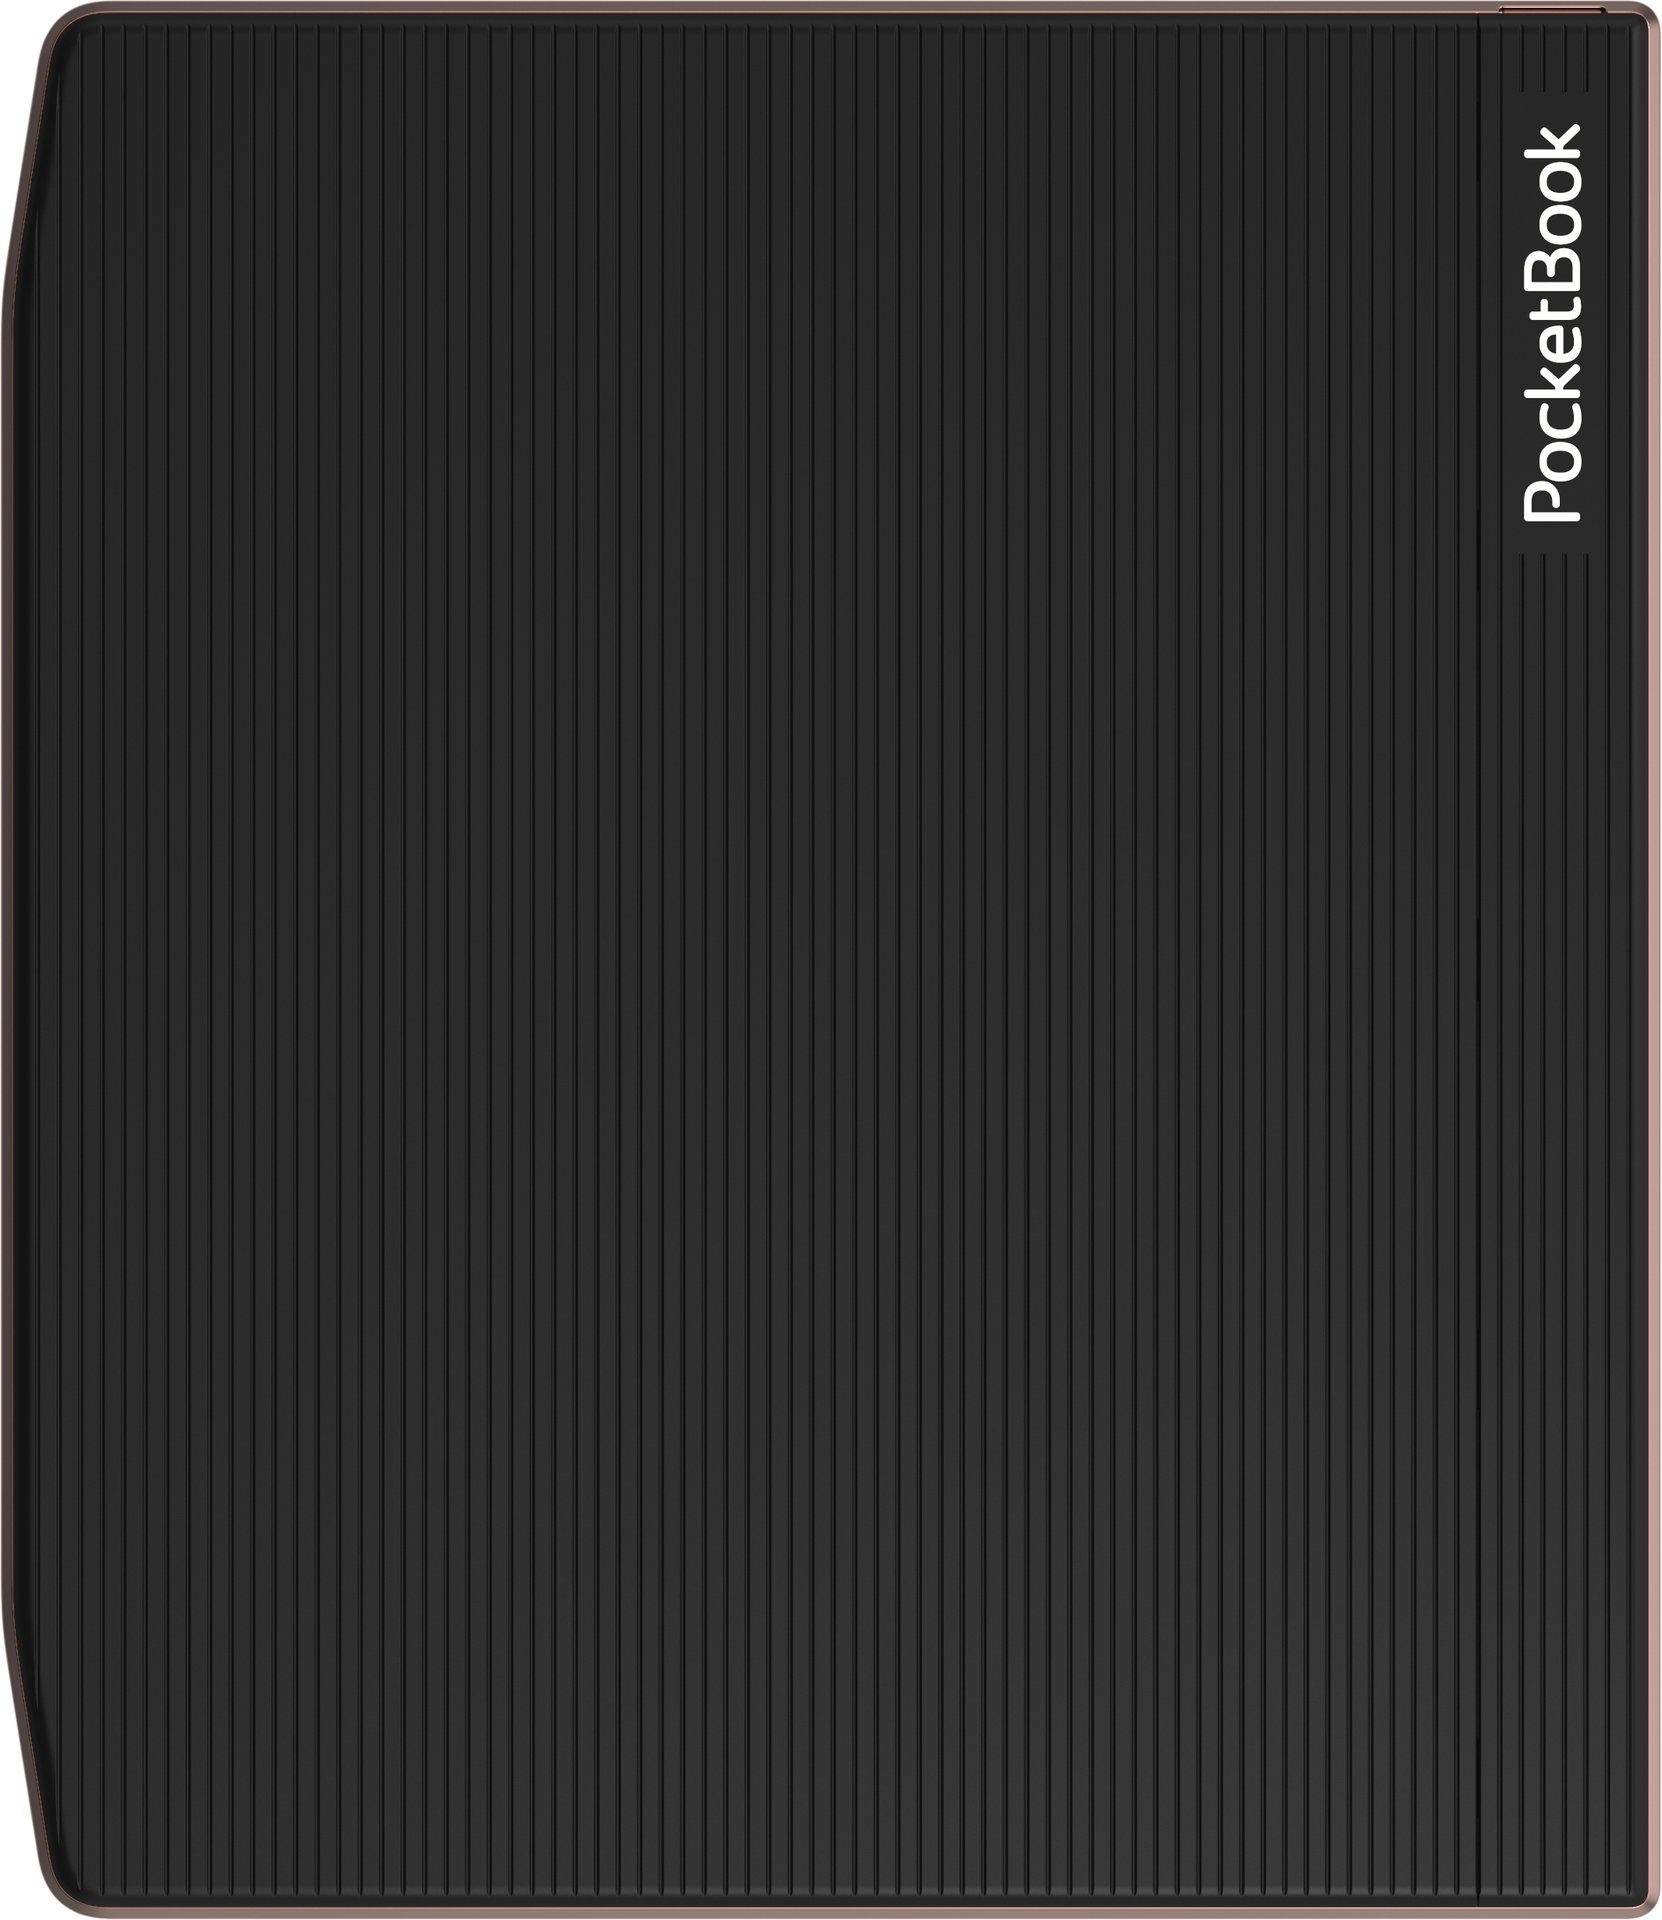 PocketBook Era - E-Book 64GB